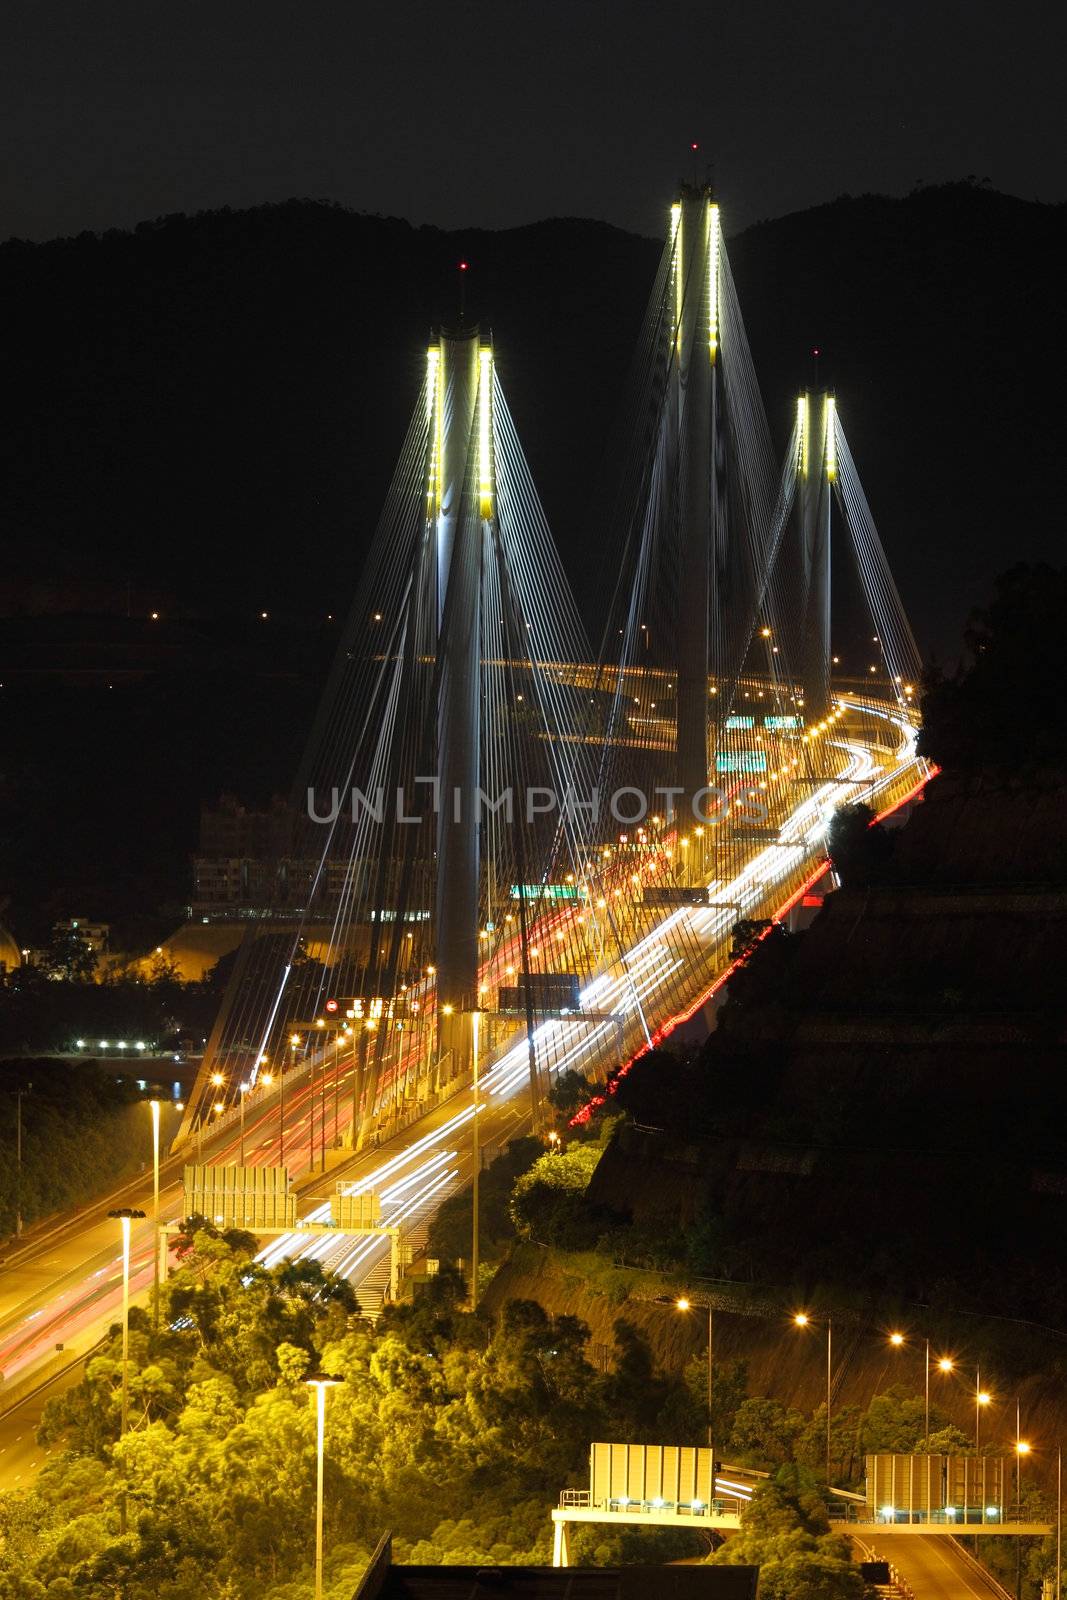 Ting Kau Bridge at night by kawing921